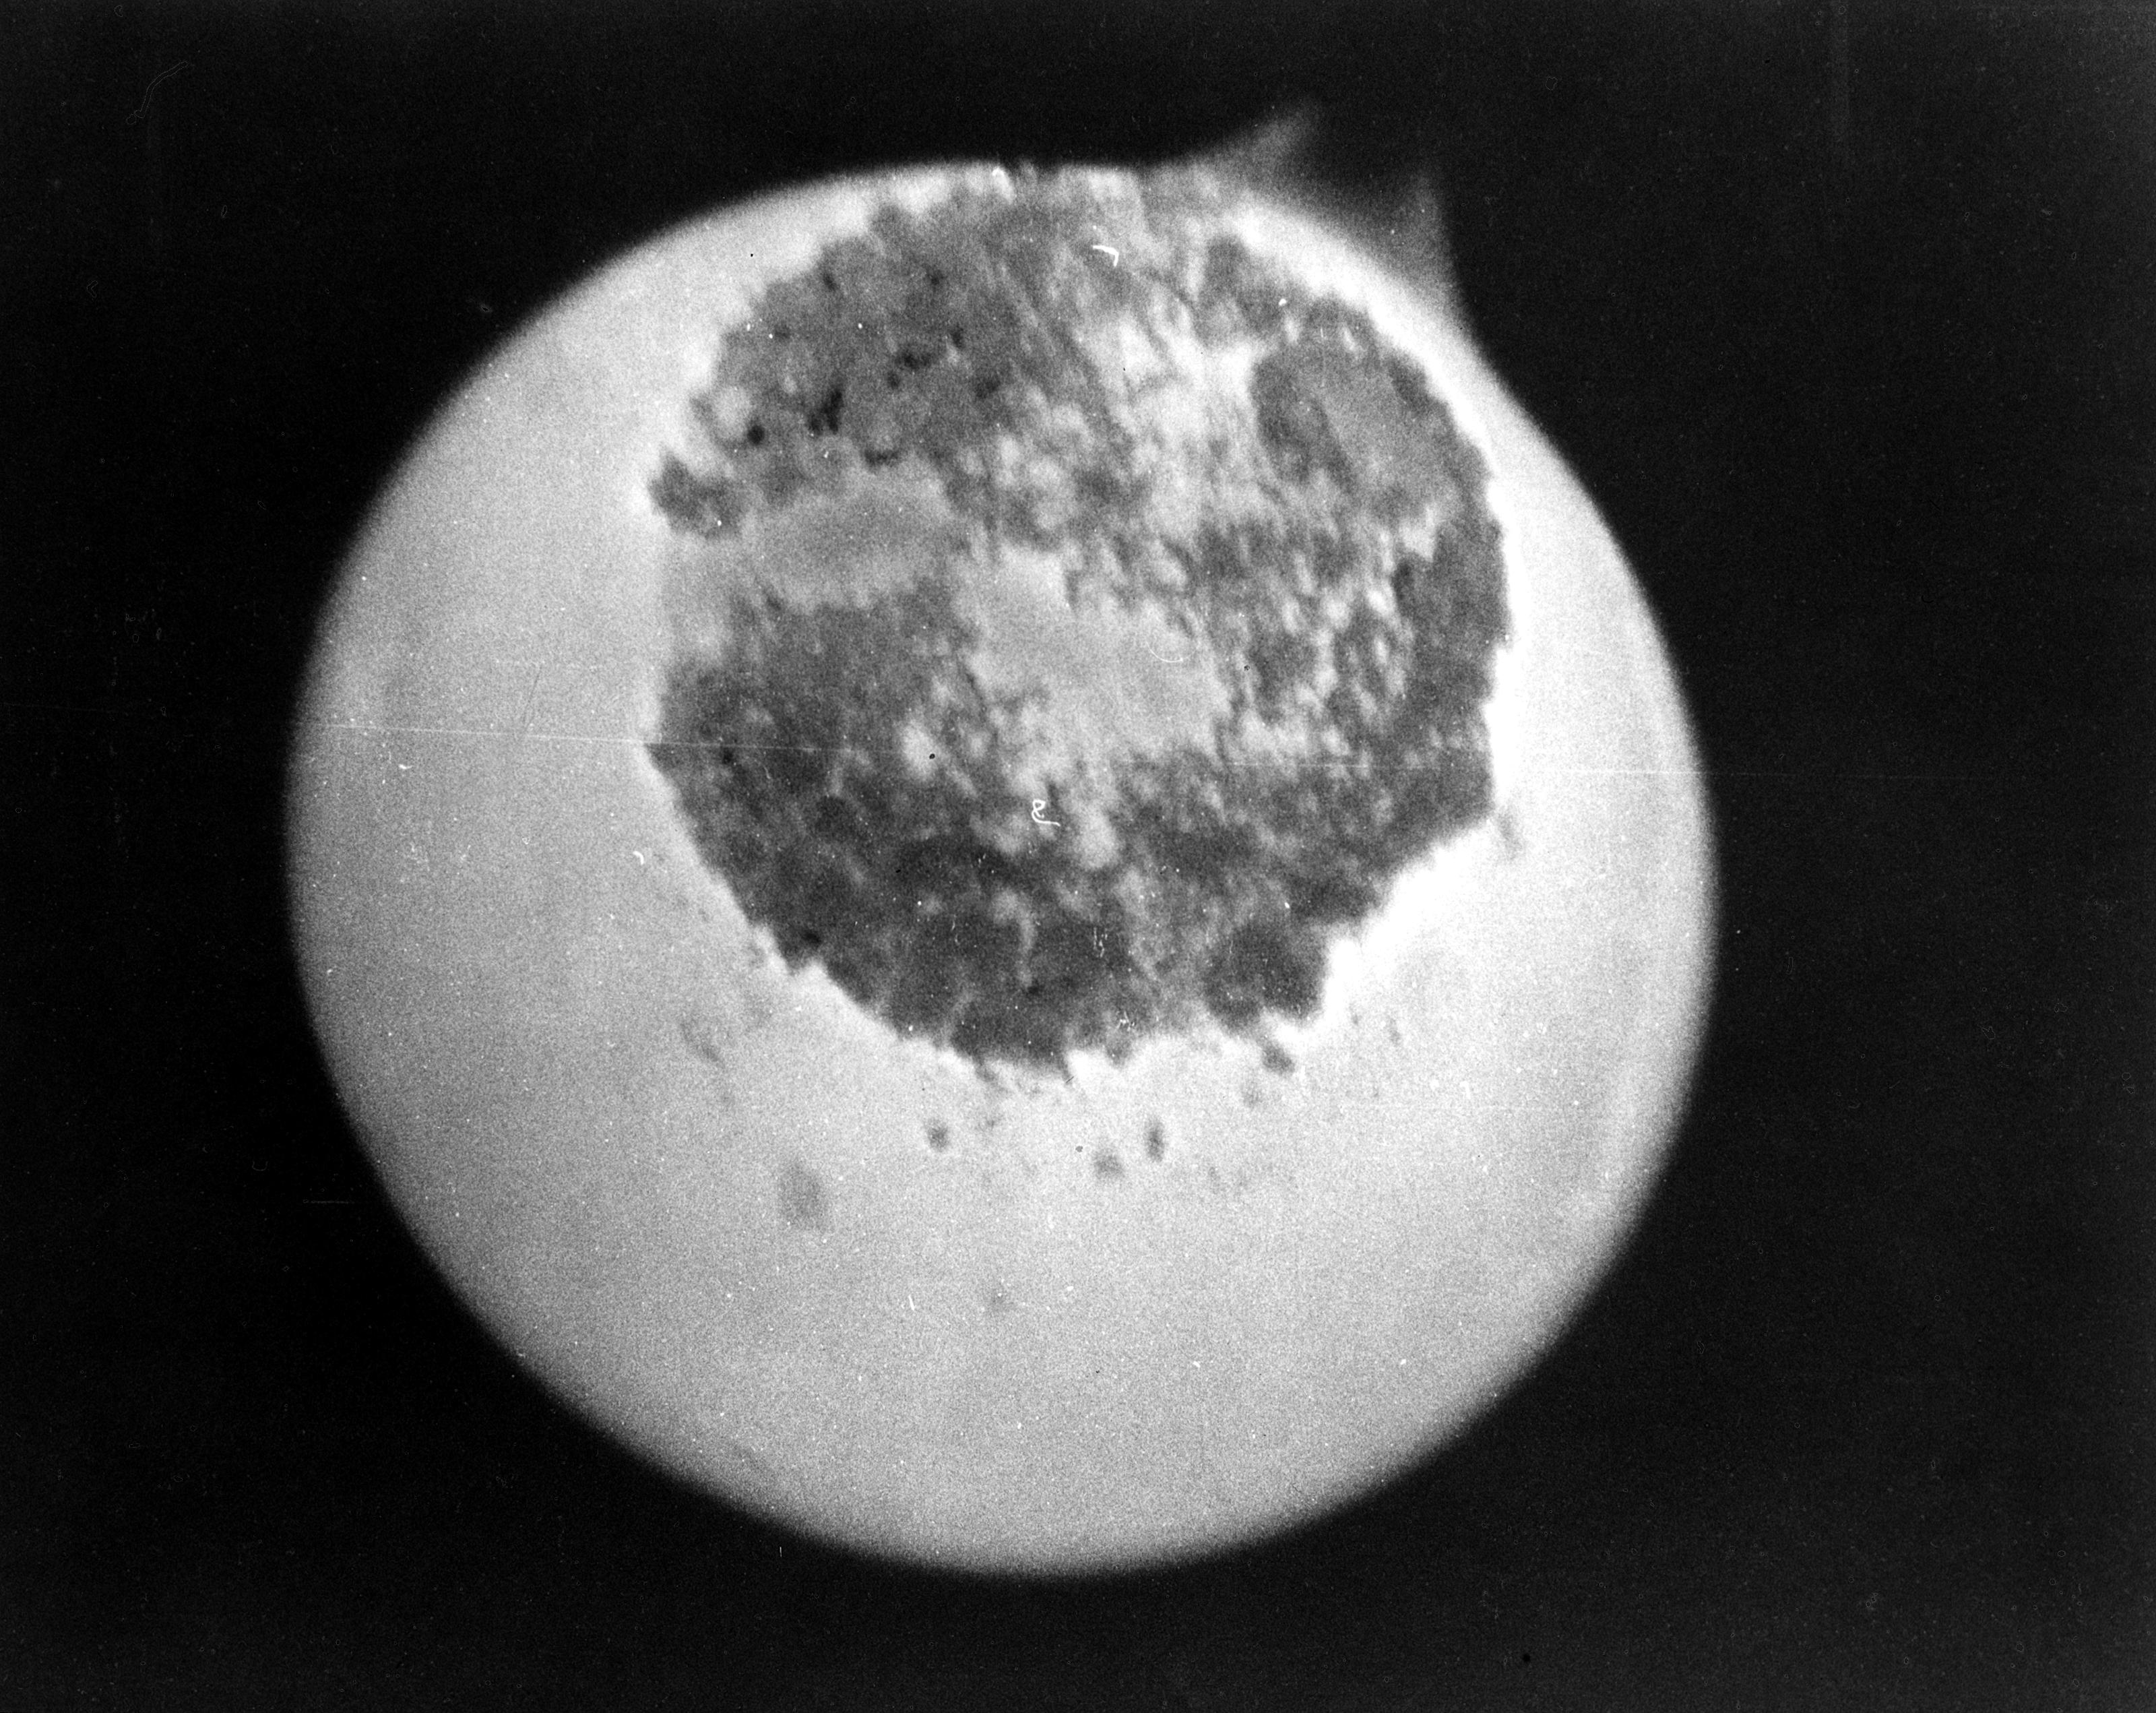 Échantillon de protactinium 233 (zone sombre au centre). © Energy.gov, Wikimedia Commons, DP